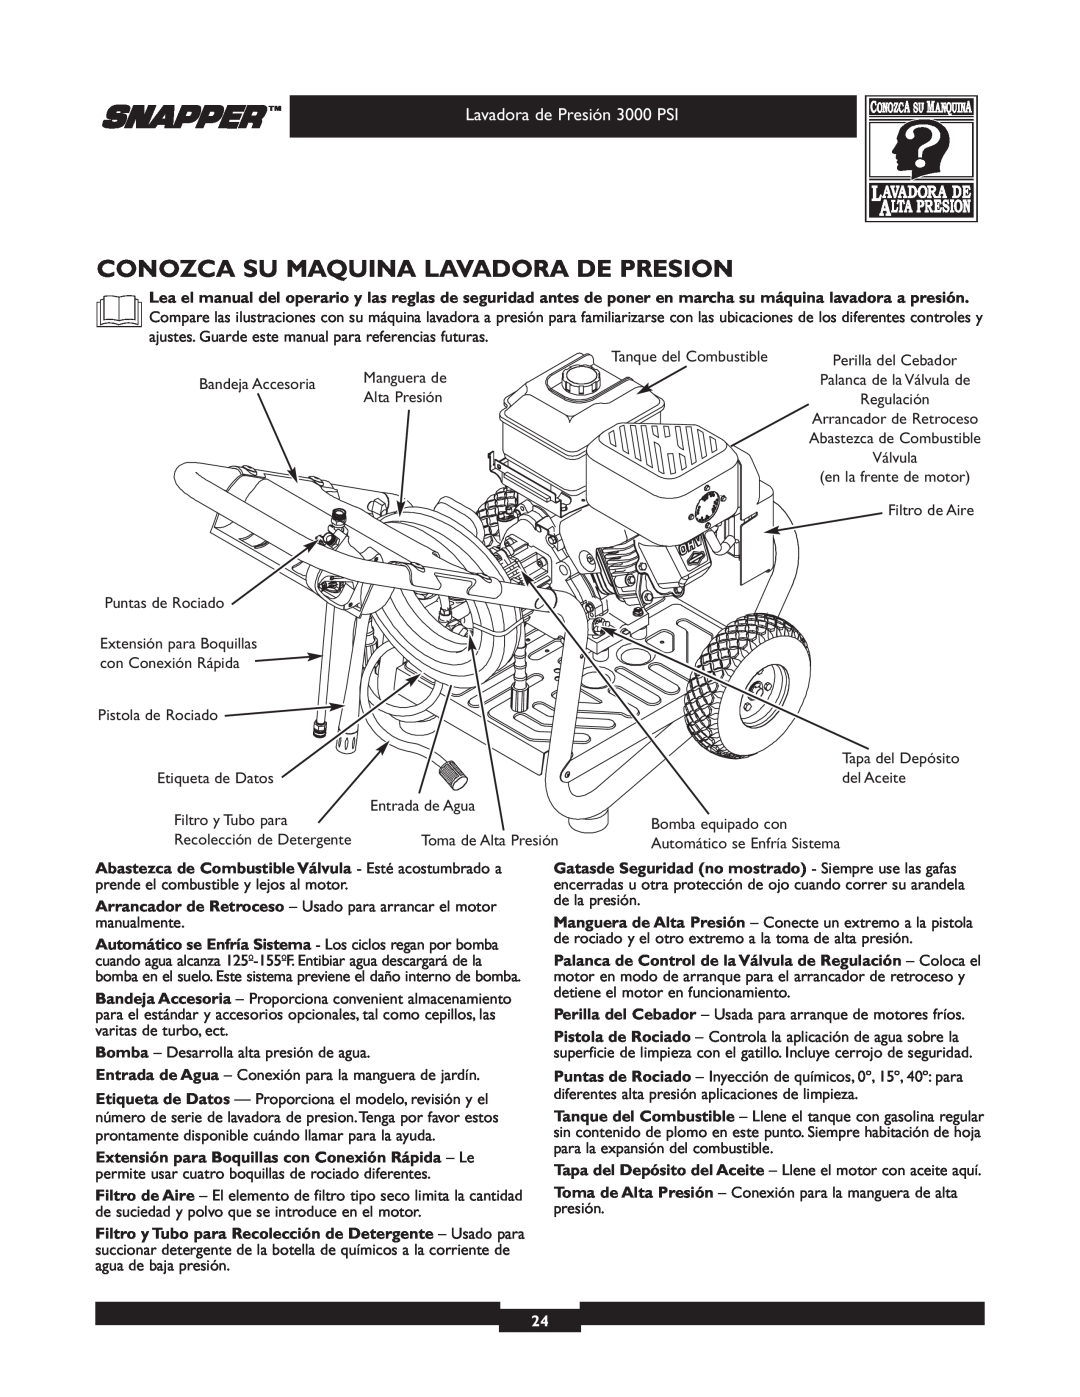 Snapper 020231-2 manual Conozca Su Maquina Lavadora De Presion, Lavadora de Presión 3000 PSI 